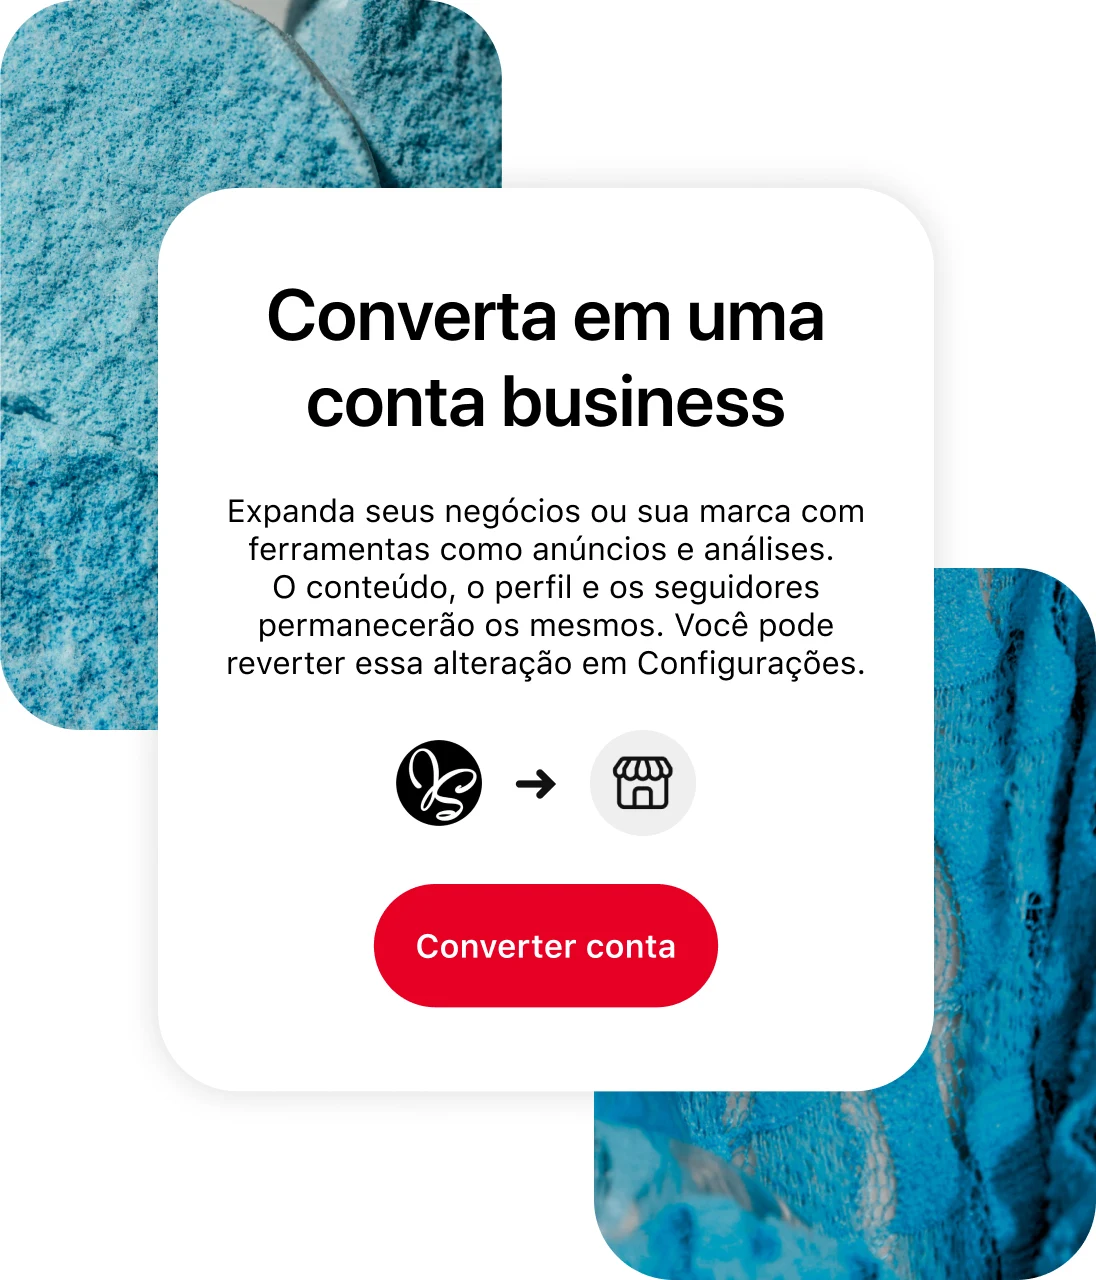 Tela do aplicativo do Pinterest mostra como converter para uma conta business